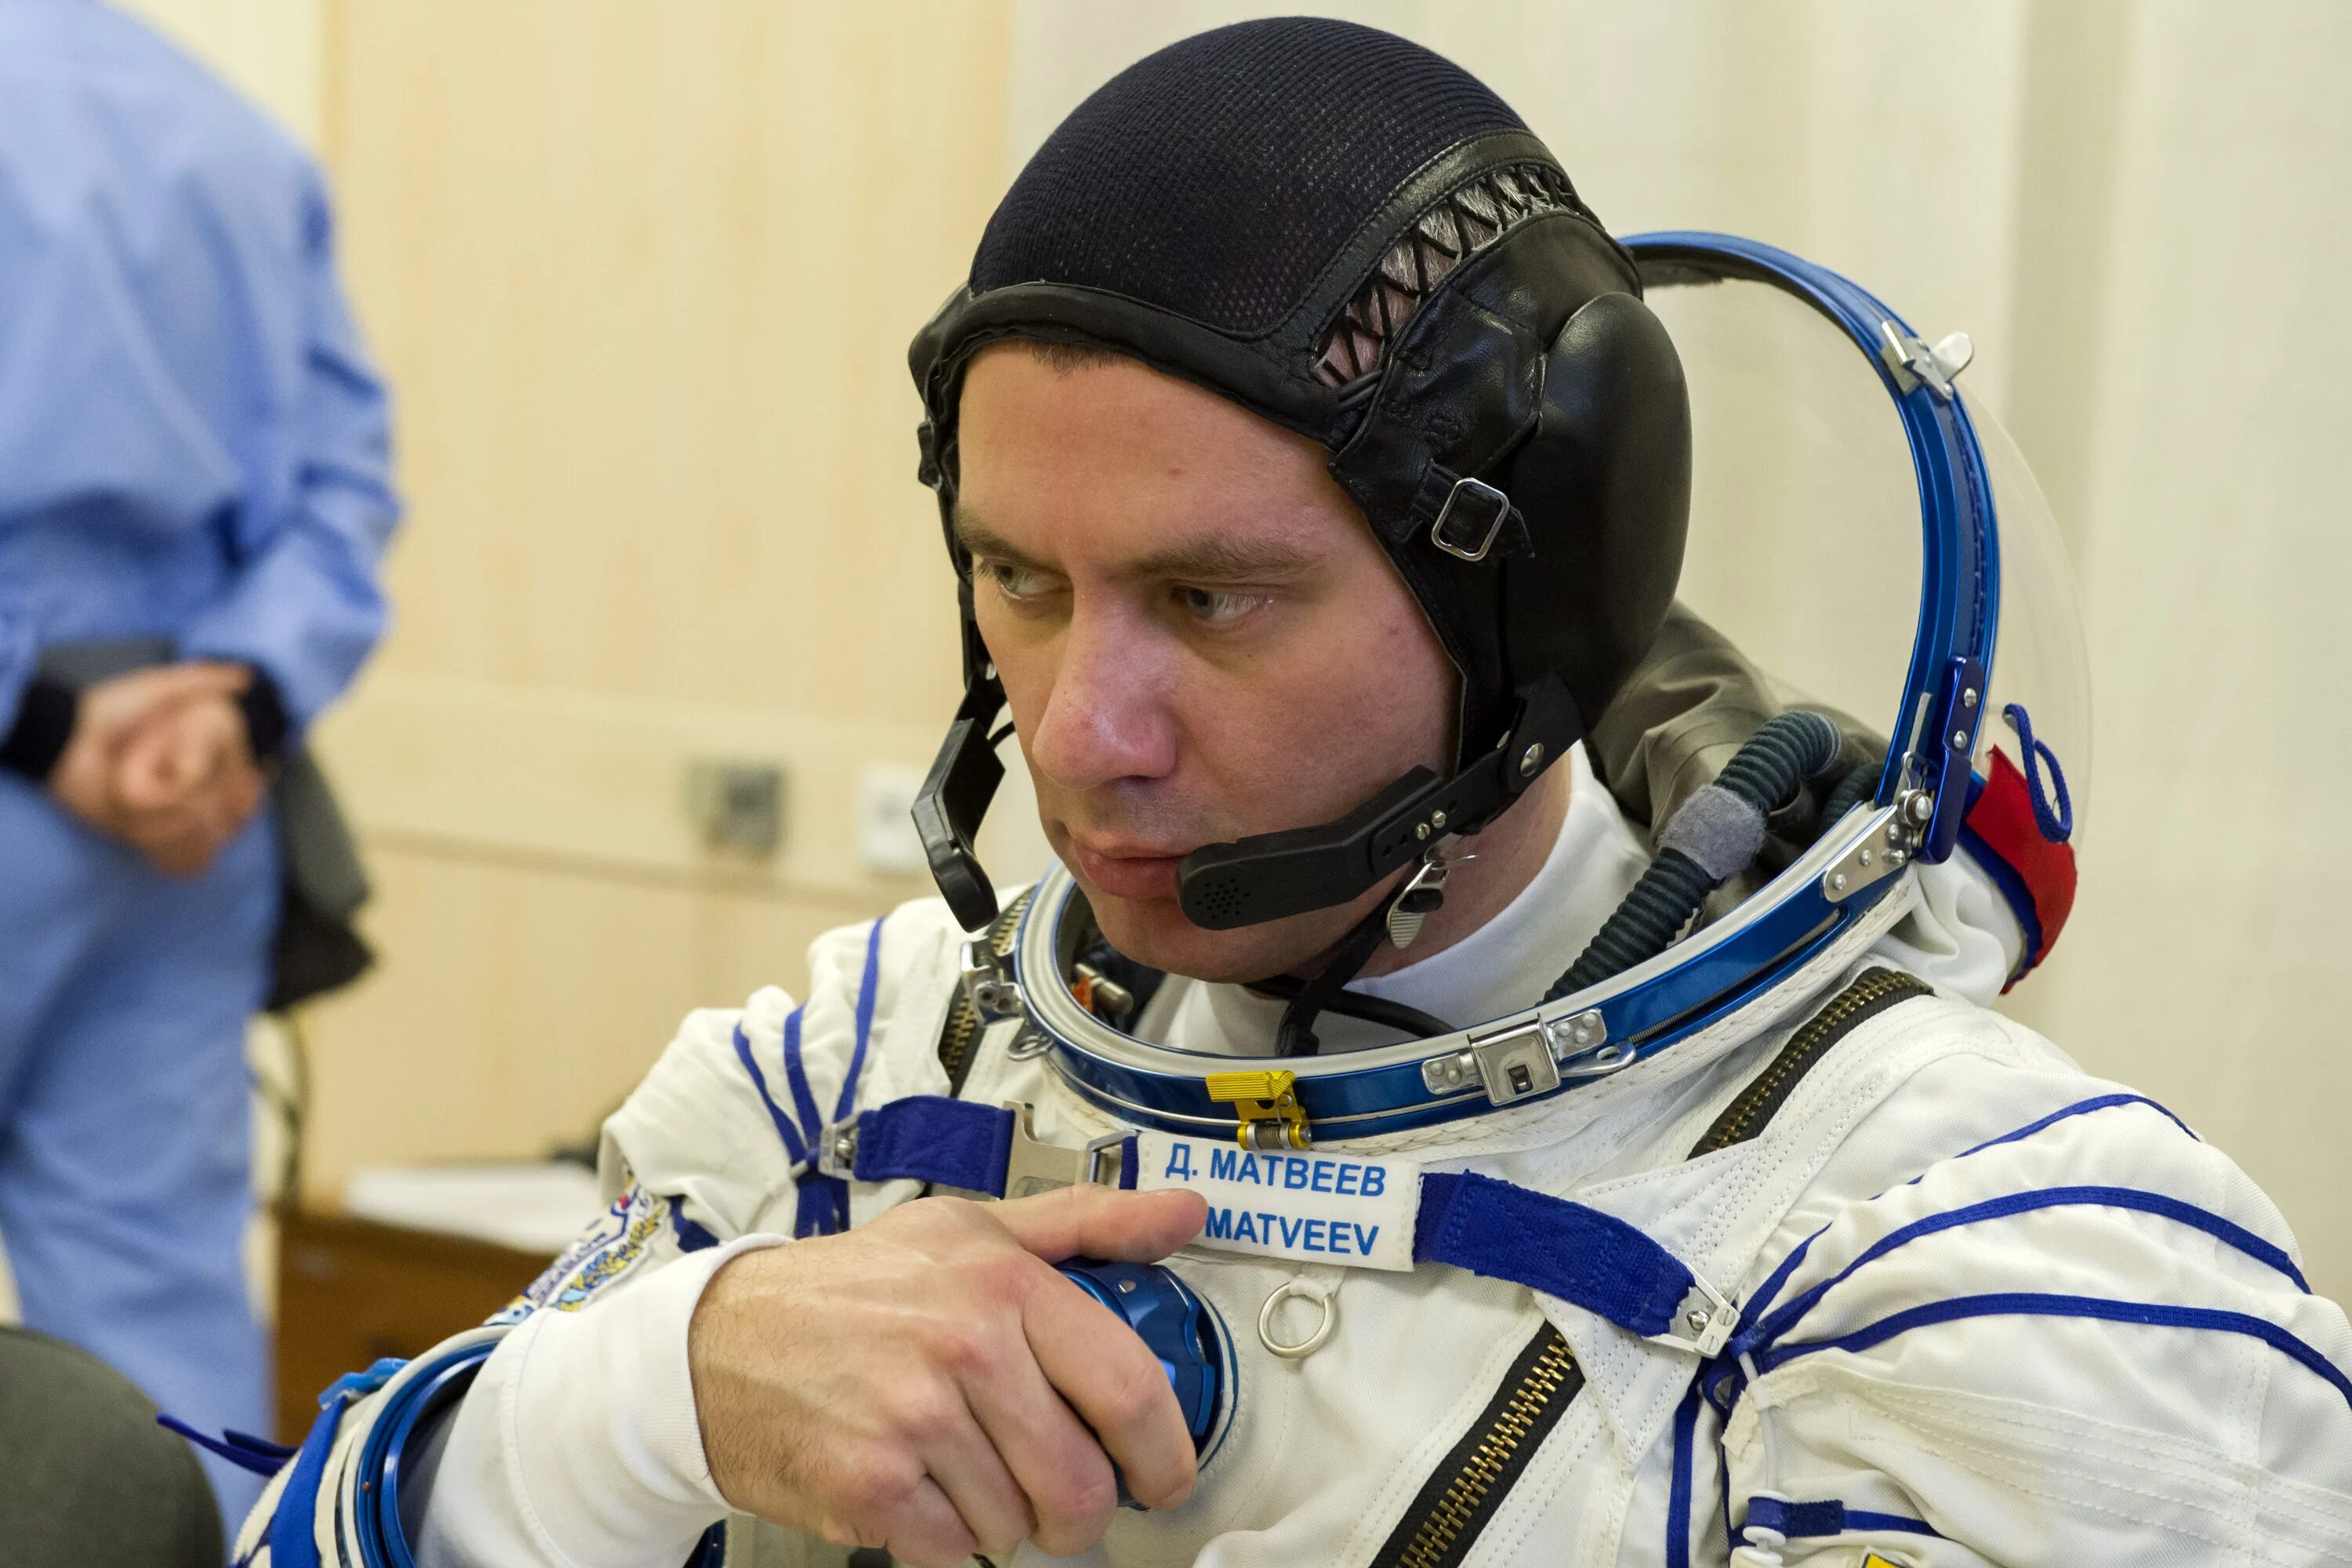 Выход Леонова в открытый космос. Фото Космонавта Матвеева.